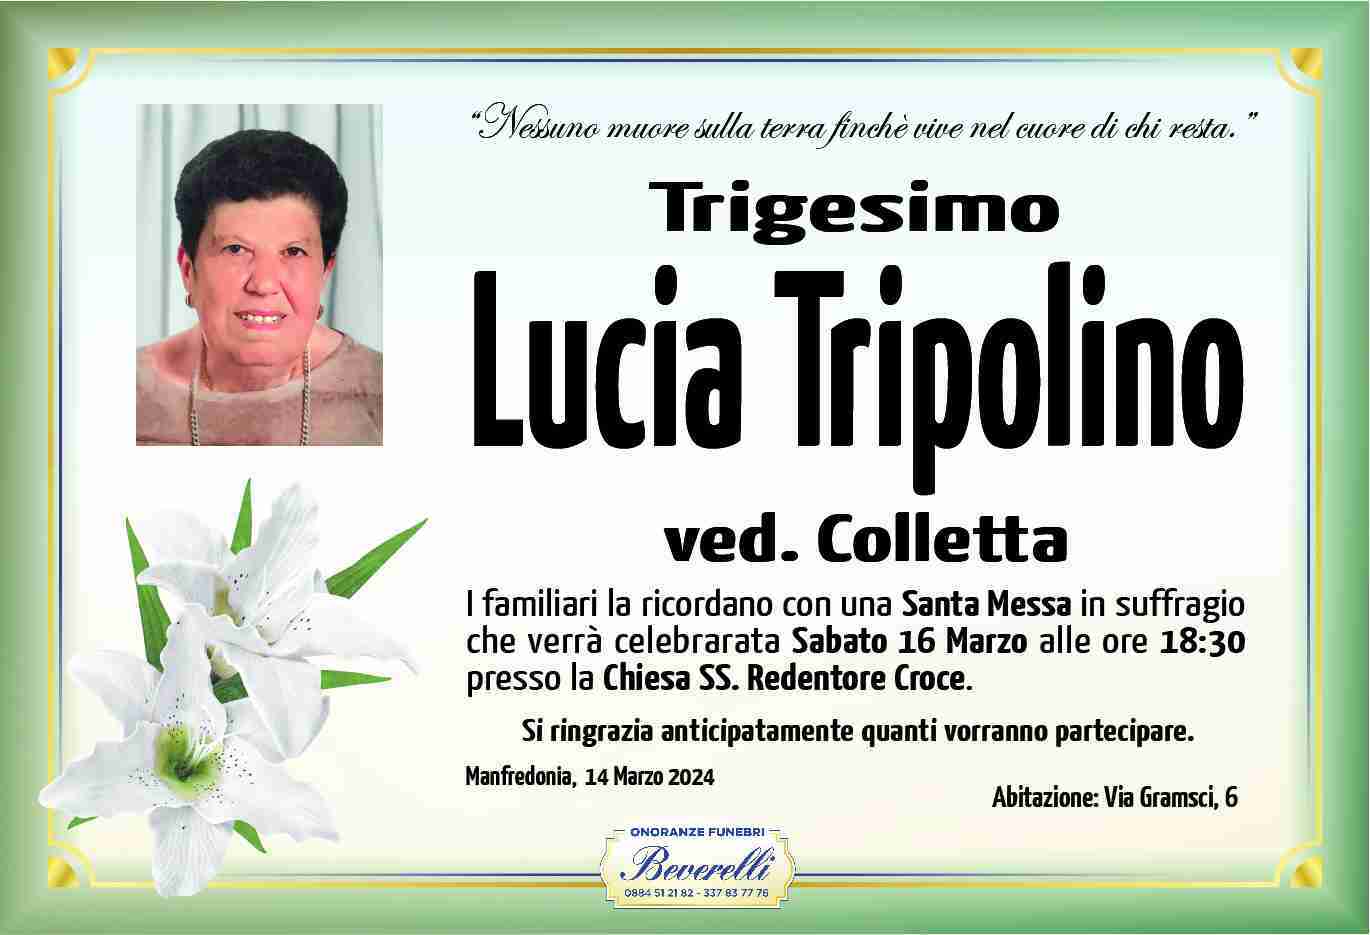 Lucia Tripolino